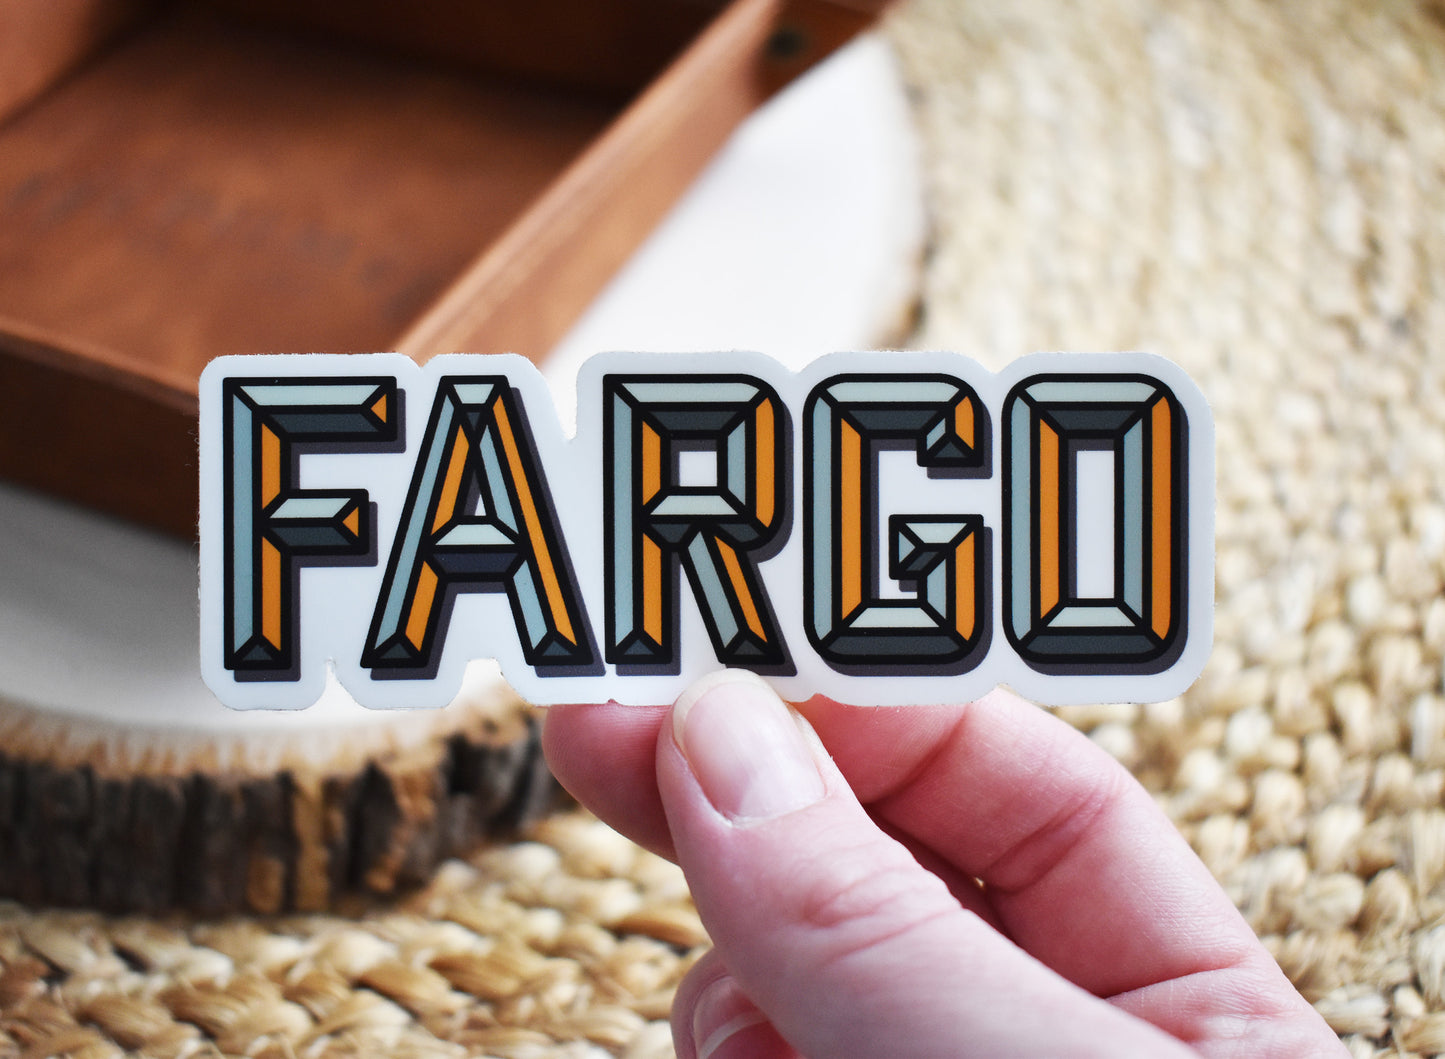 Fargo Sticker